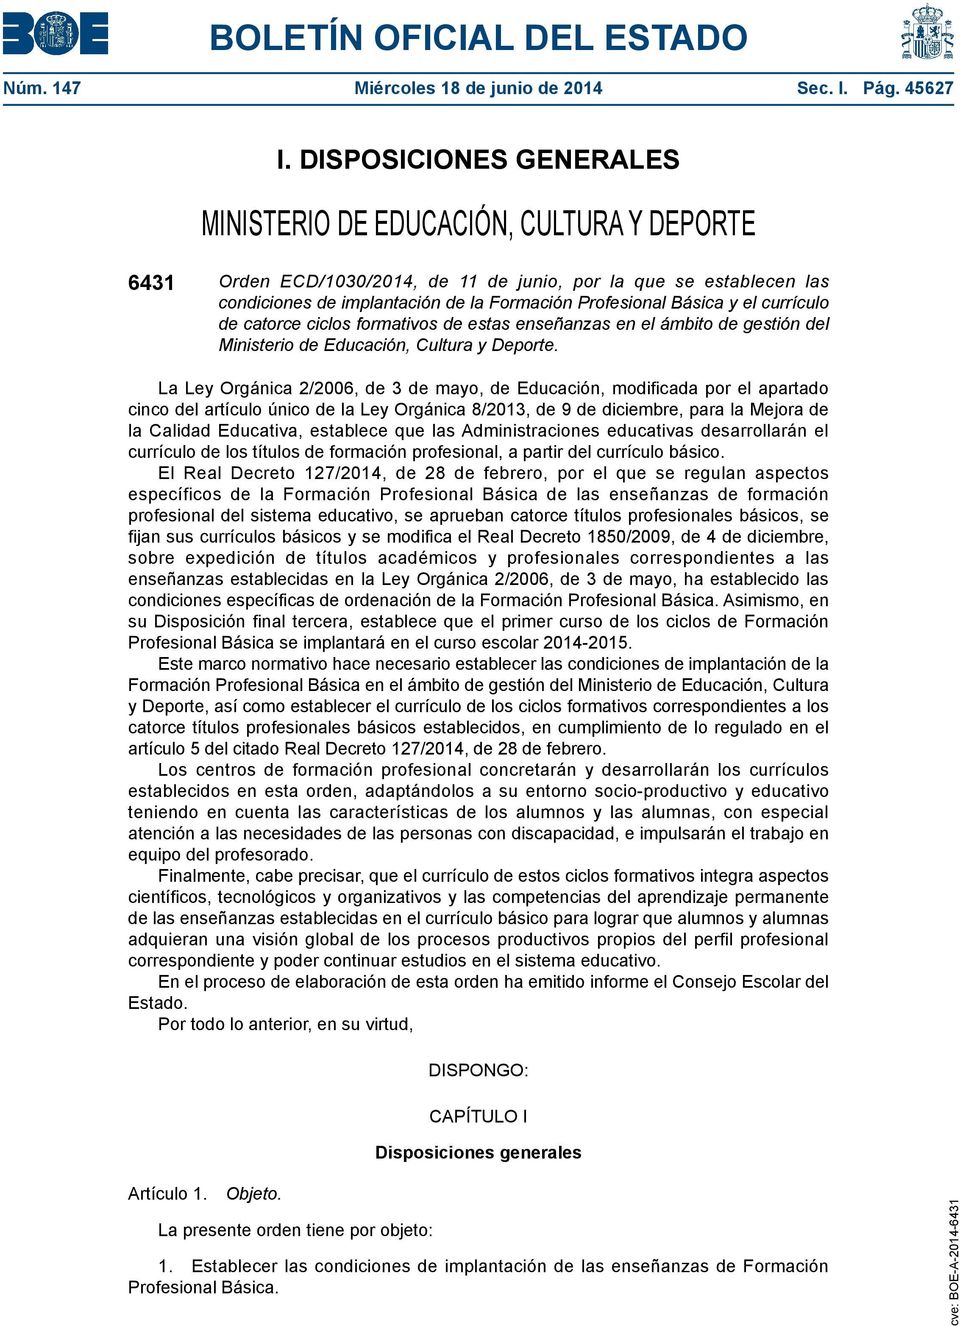 Básica y el currículo de catorce ciclos formativos de estas enseñanzas en el ámbito de gestión del Ministerio de Educación, Cultura y Deporte.